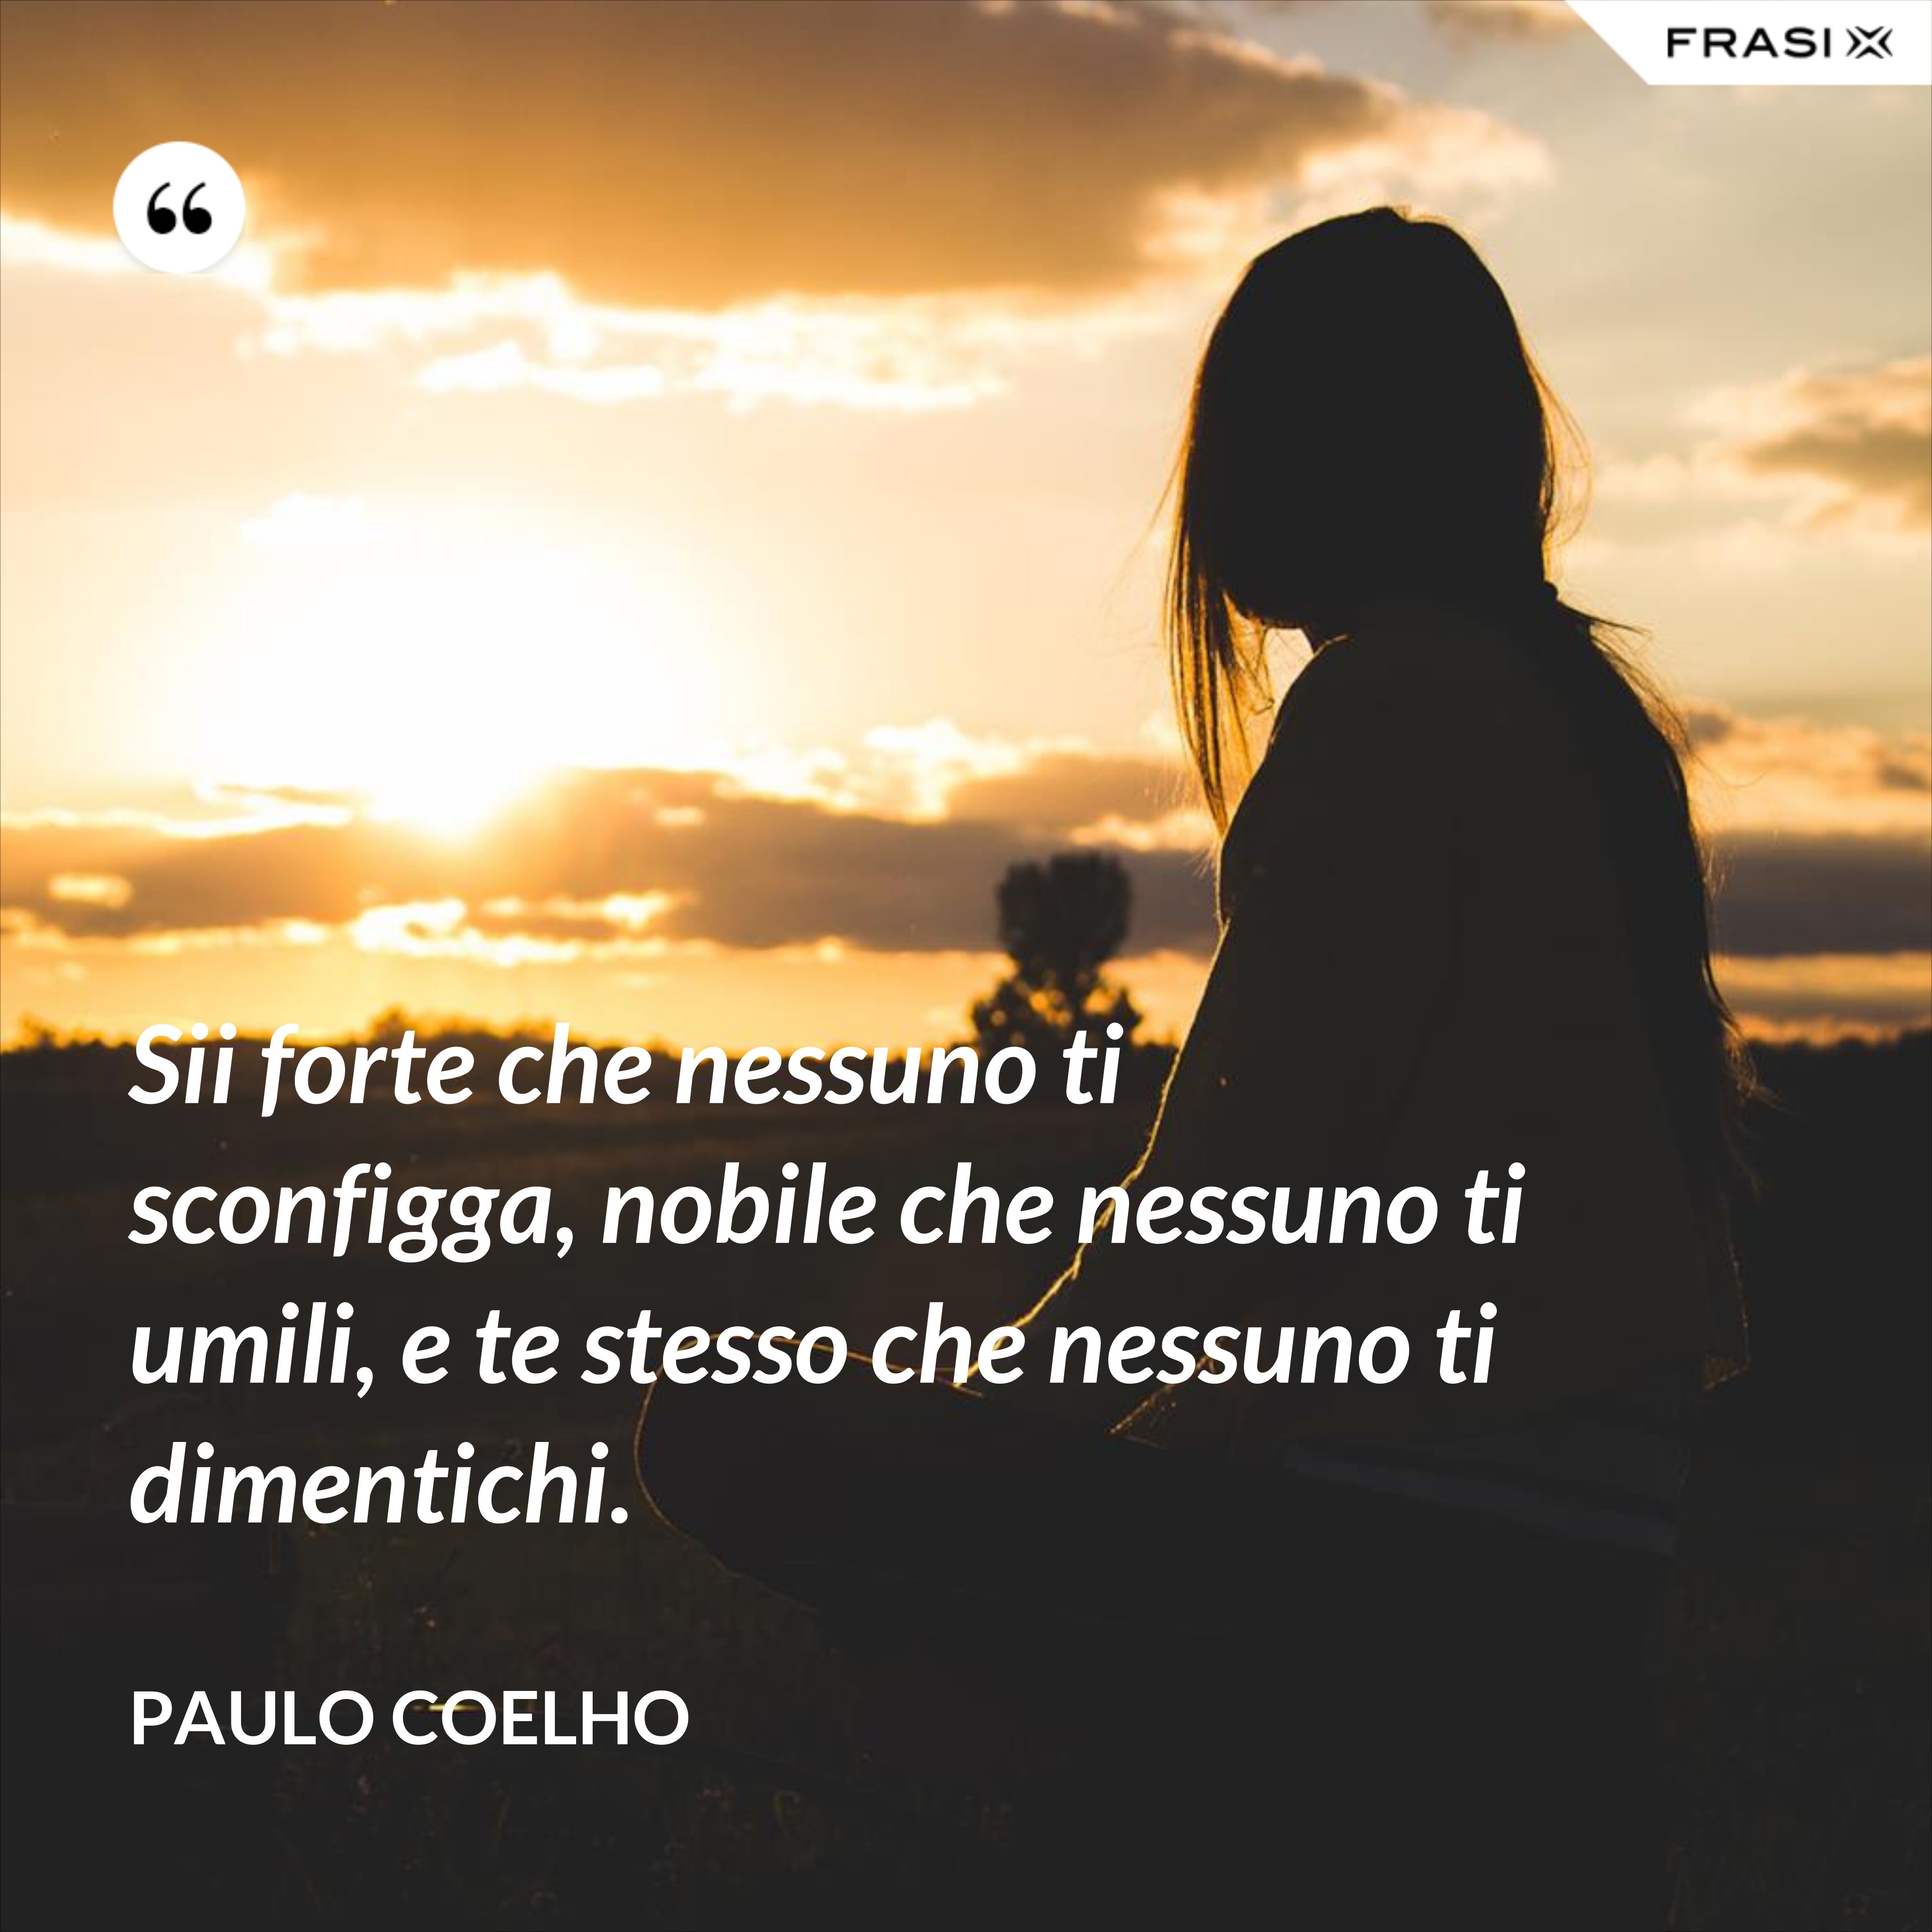 Sii forte che nessuno ti sconfigga, nobile che nessuno ti umili, e te stesso che nessuno ti dimentichi. - Paulo Coelho